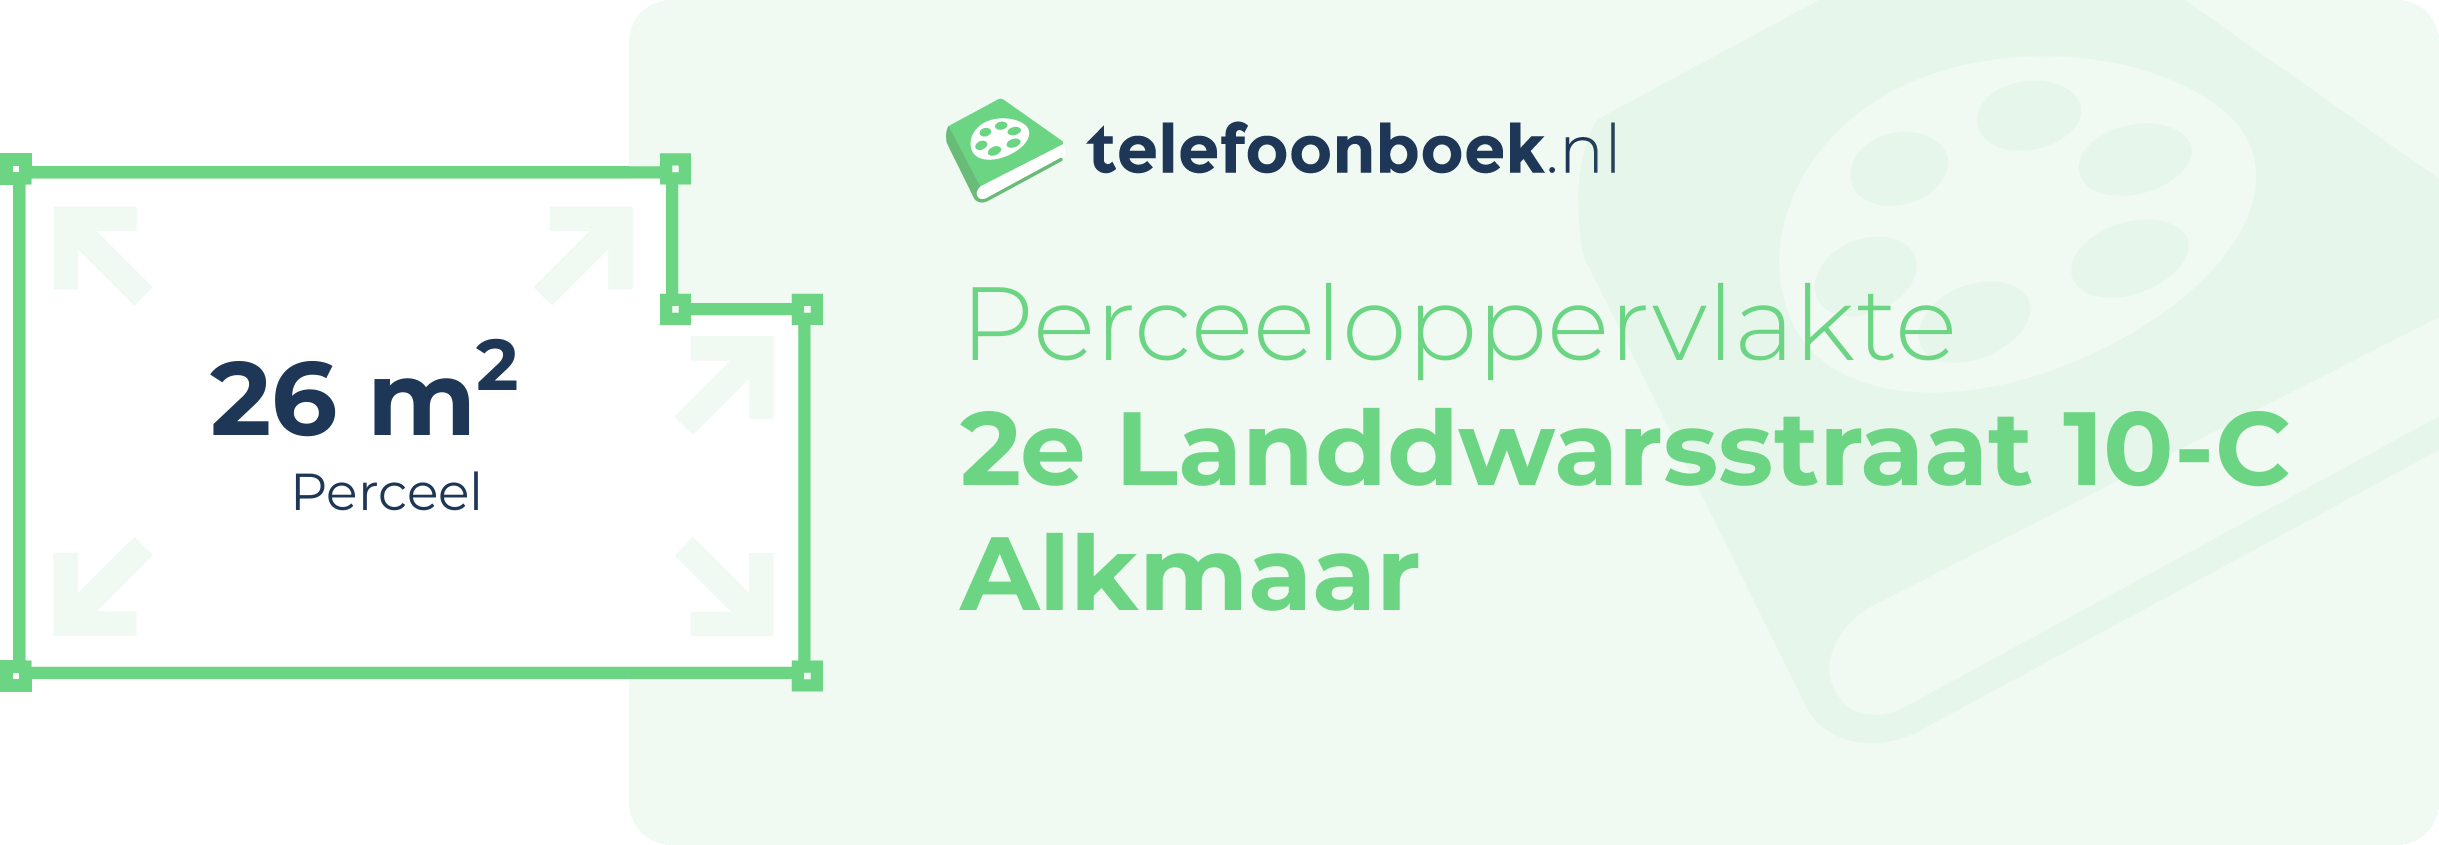 Perceeloppervlakte 2e Landdwarsstraat 10-C Alkmaar